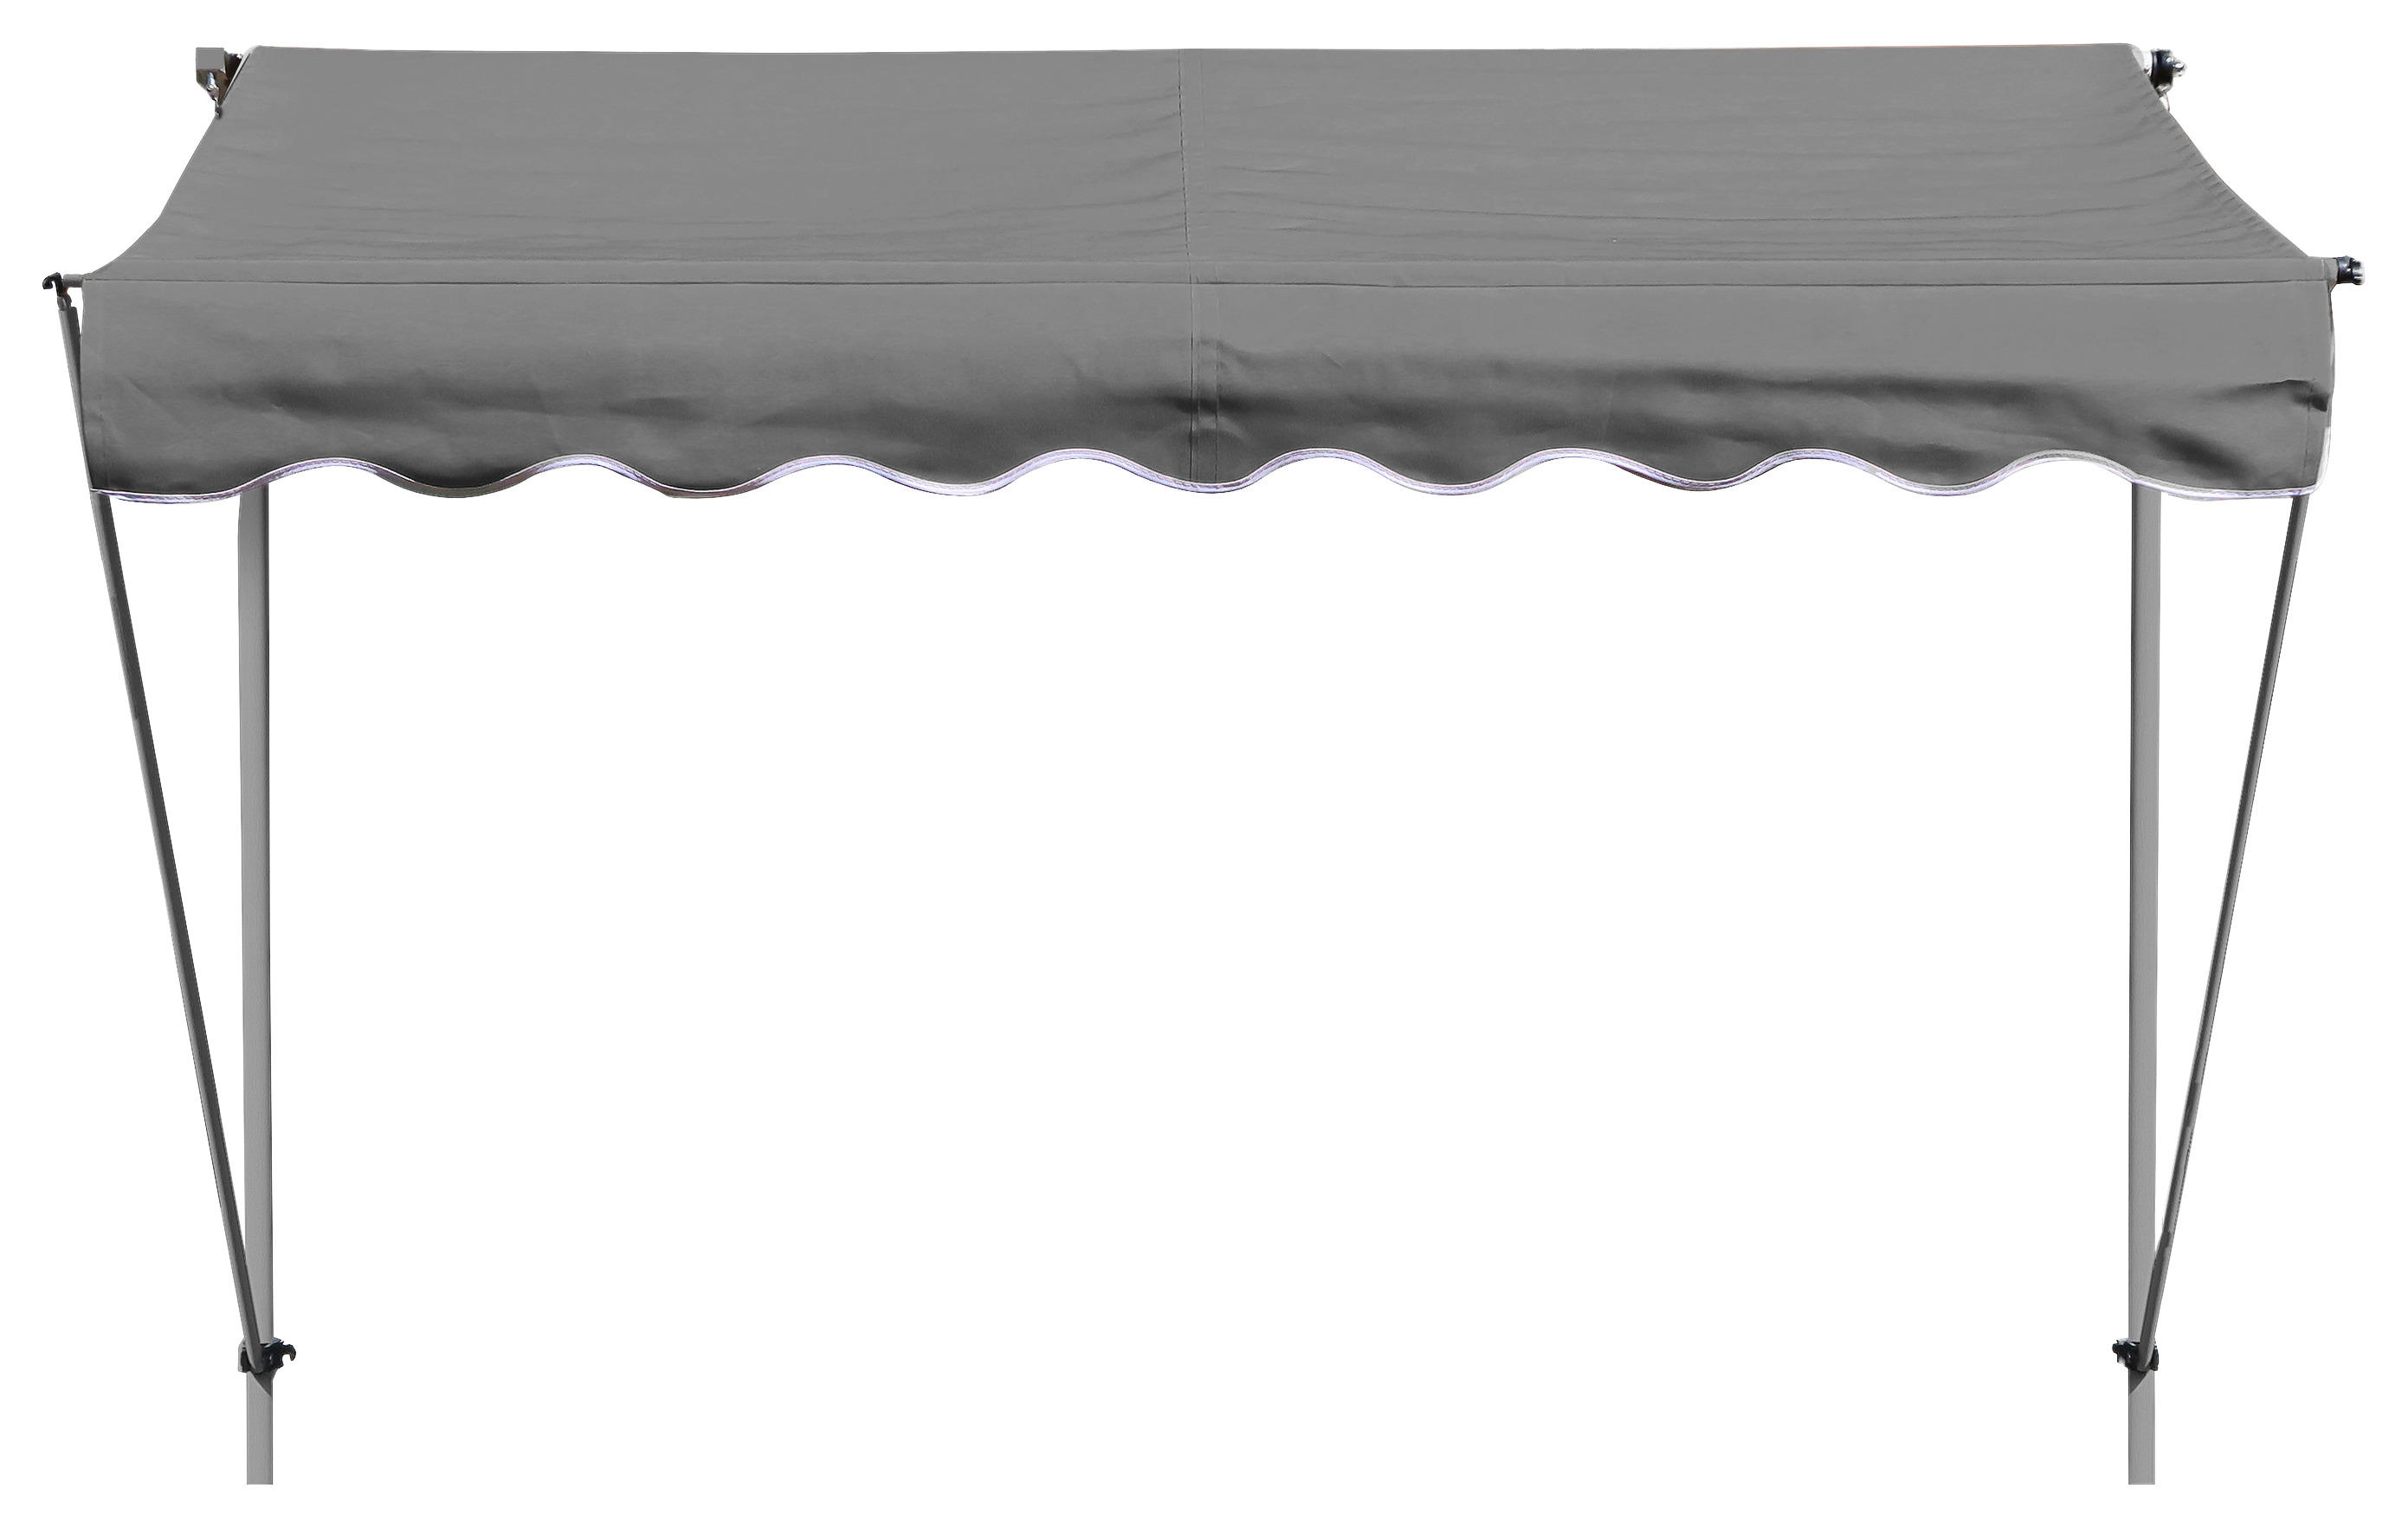 Klemm-markise Ontario Grau B/l: Ca. 205x130 Cm Ontario - grau (205,00/130,00cm)